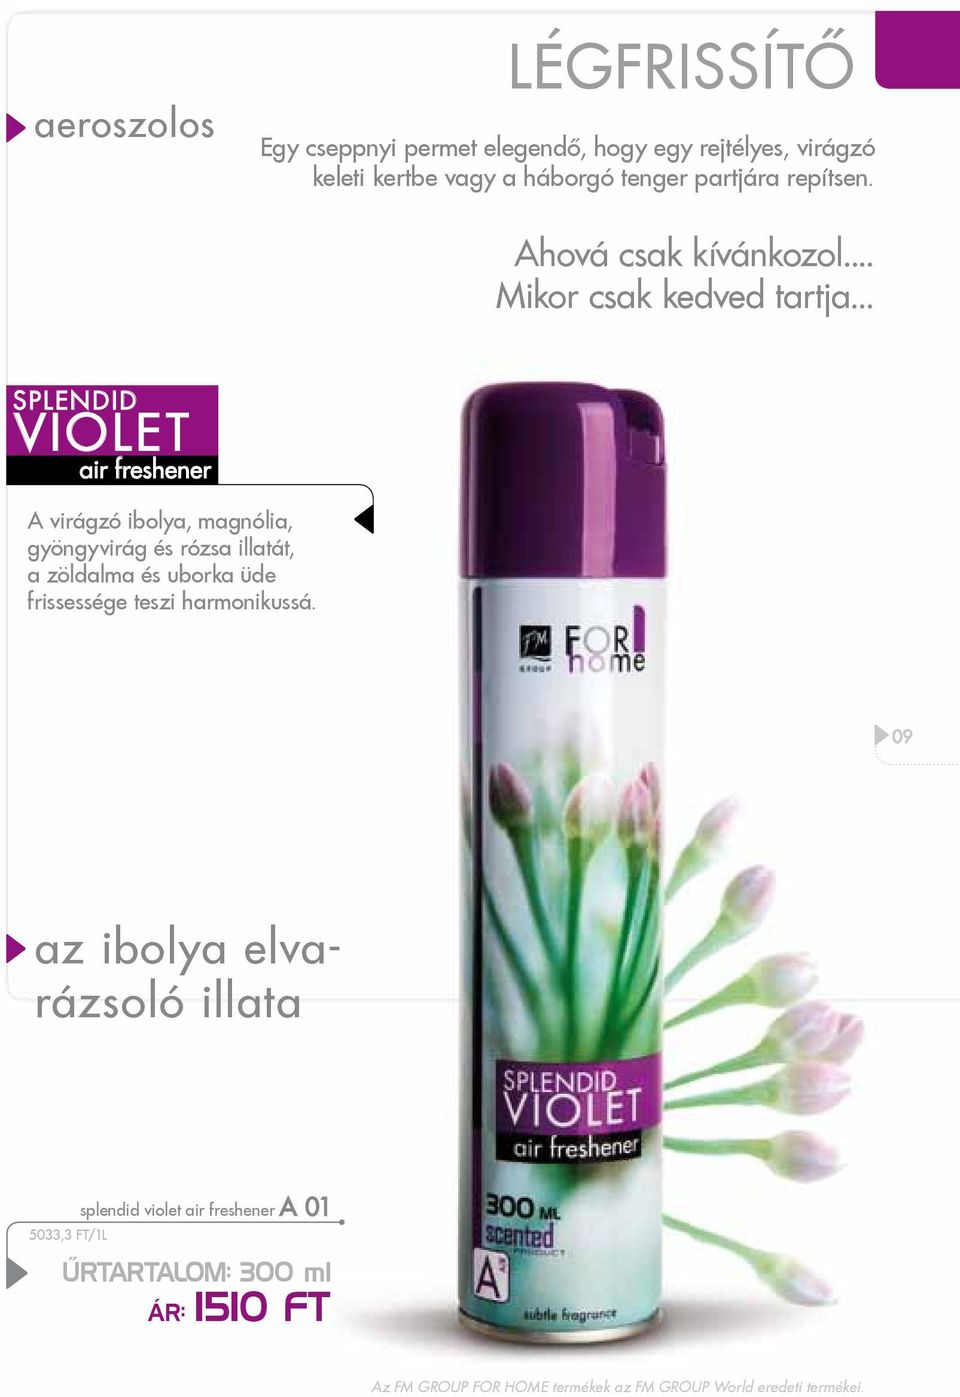 .. splendid violet air freshener A virágzó ibolya, magnólia, gyöngyvirág és rózsa illatát, a zöldalma és uborka üde frissessége